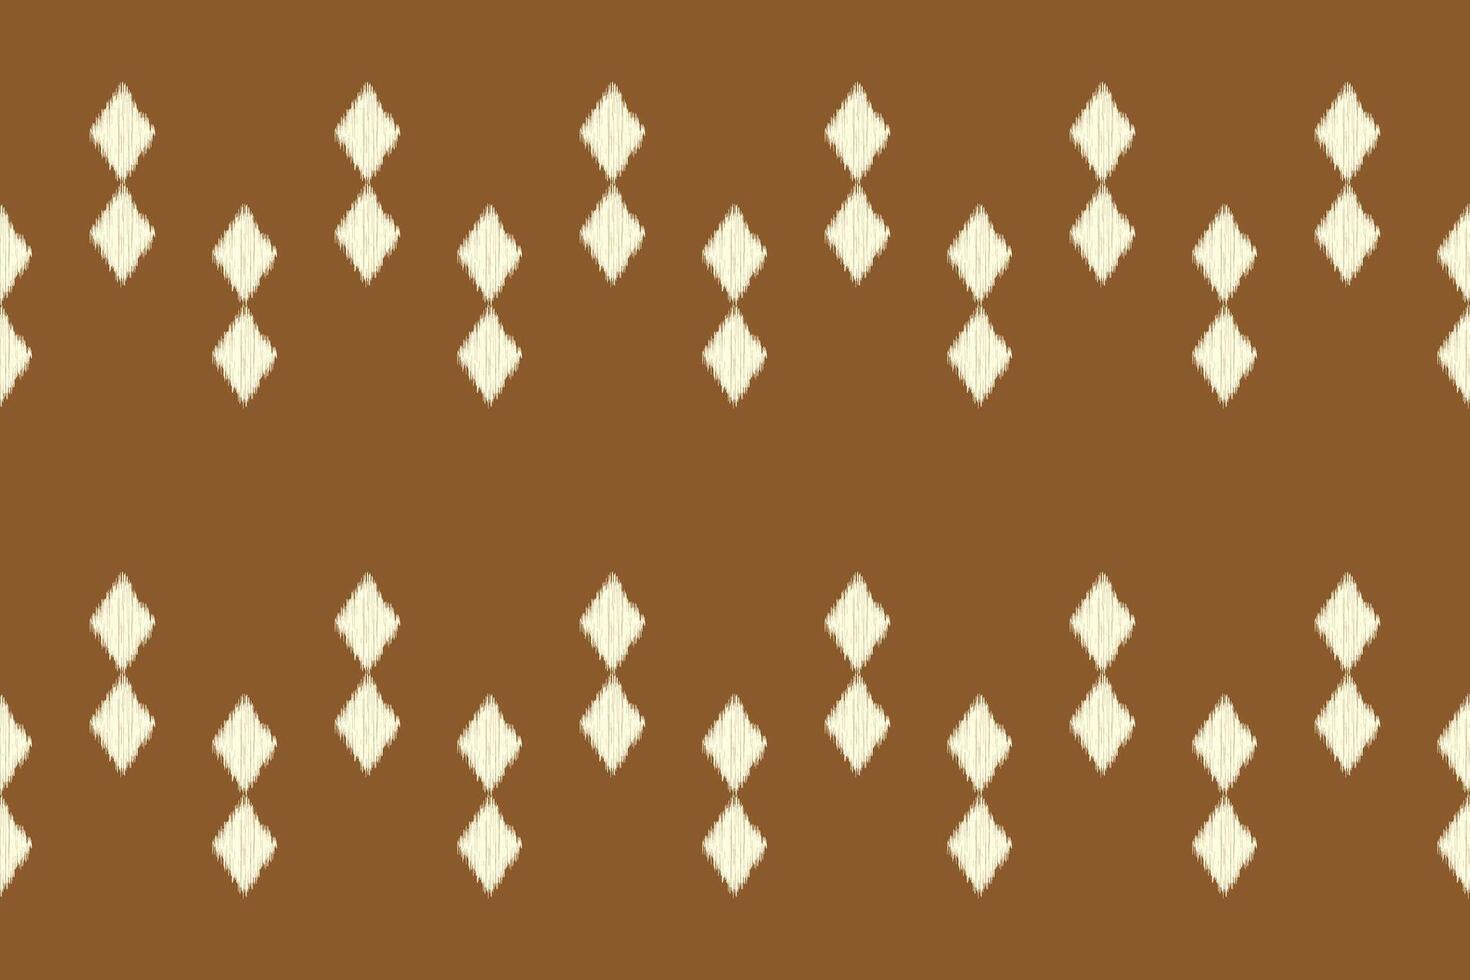 traditionell ethnisch Ikat Motiv Stoff Muster geometrisch Stil.afrikanisch Ikat Stickerei ethnisch orientalisch Muster braun Hintergrund Hintergrund. abstrakt, Illustration, Textur, Rahmen, Dekoration. vektor